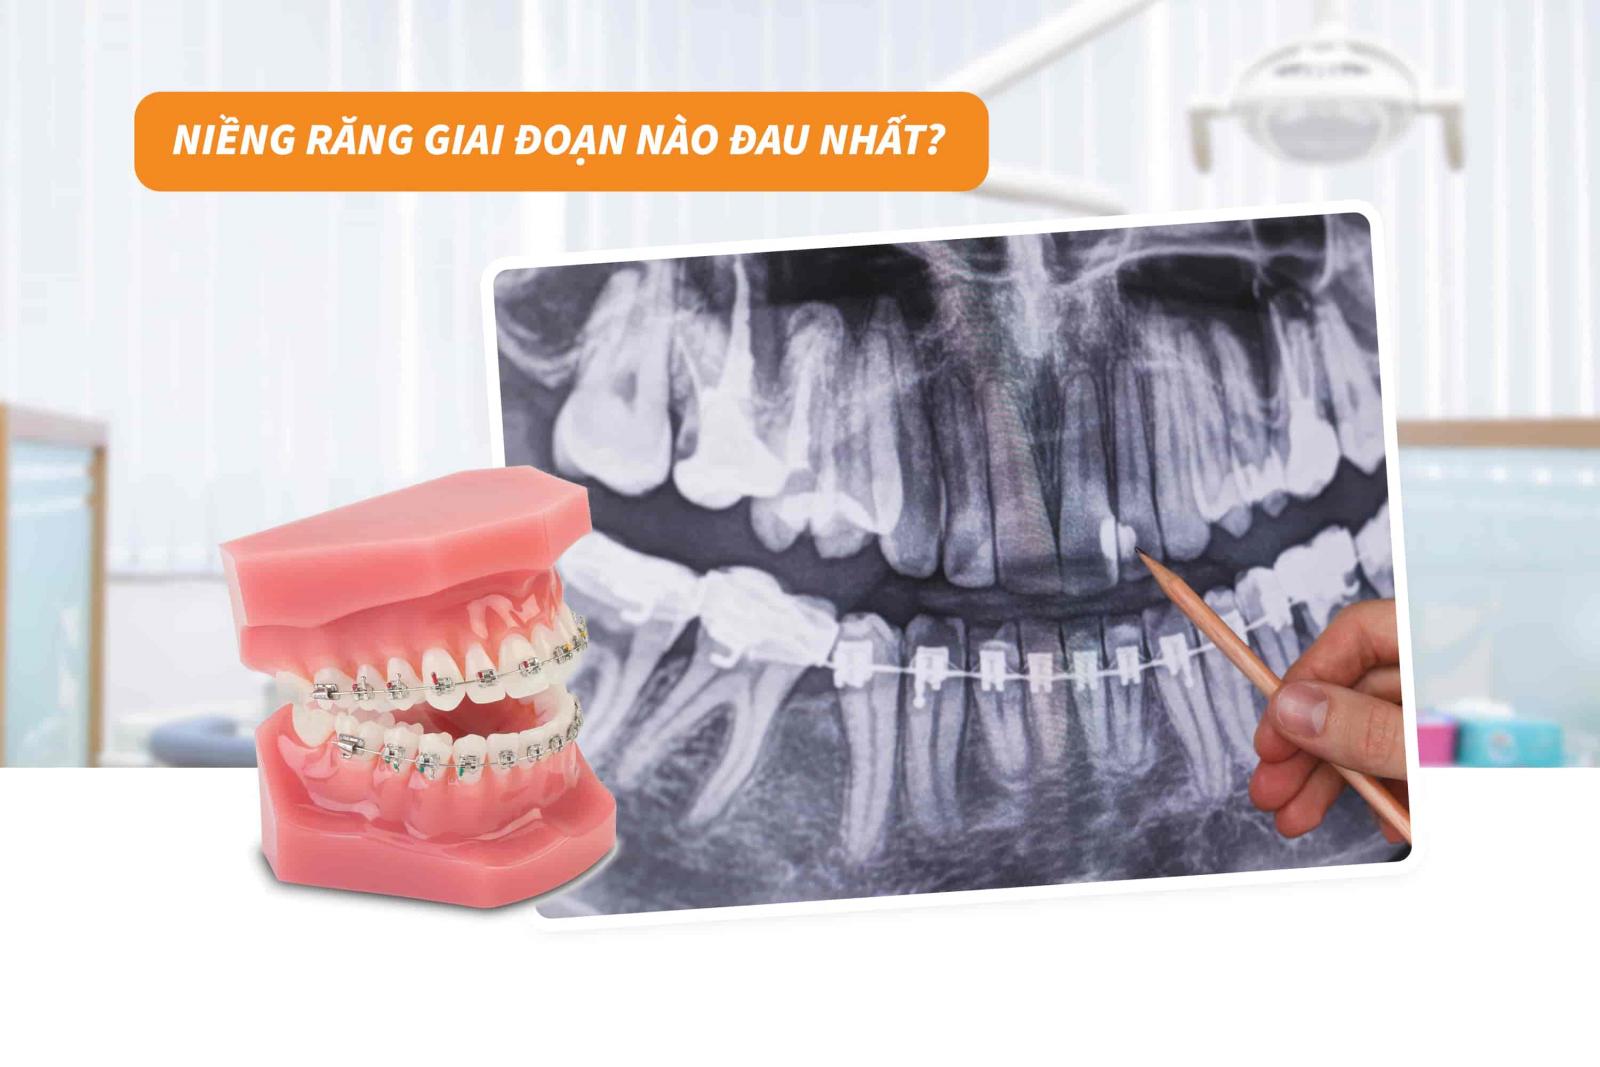 Niềng răng giai đoạn nào là đau nhất?